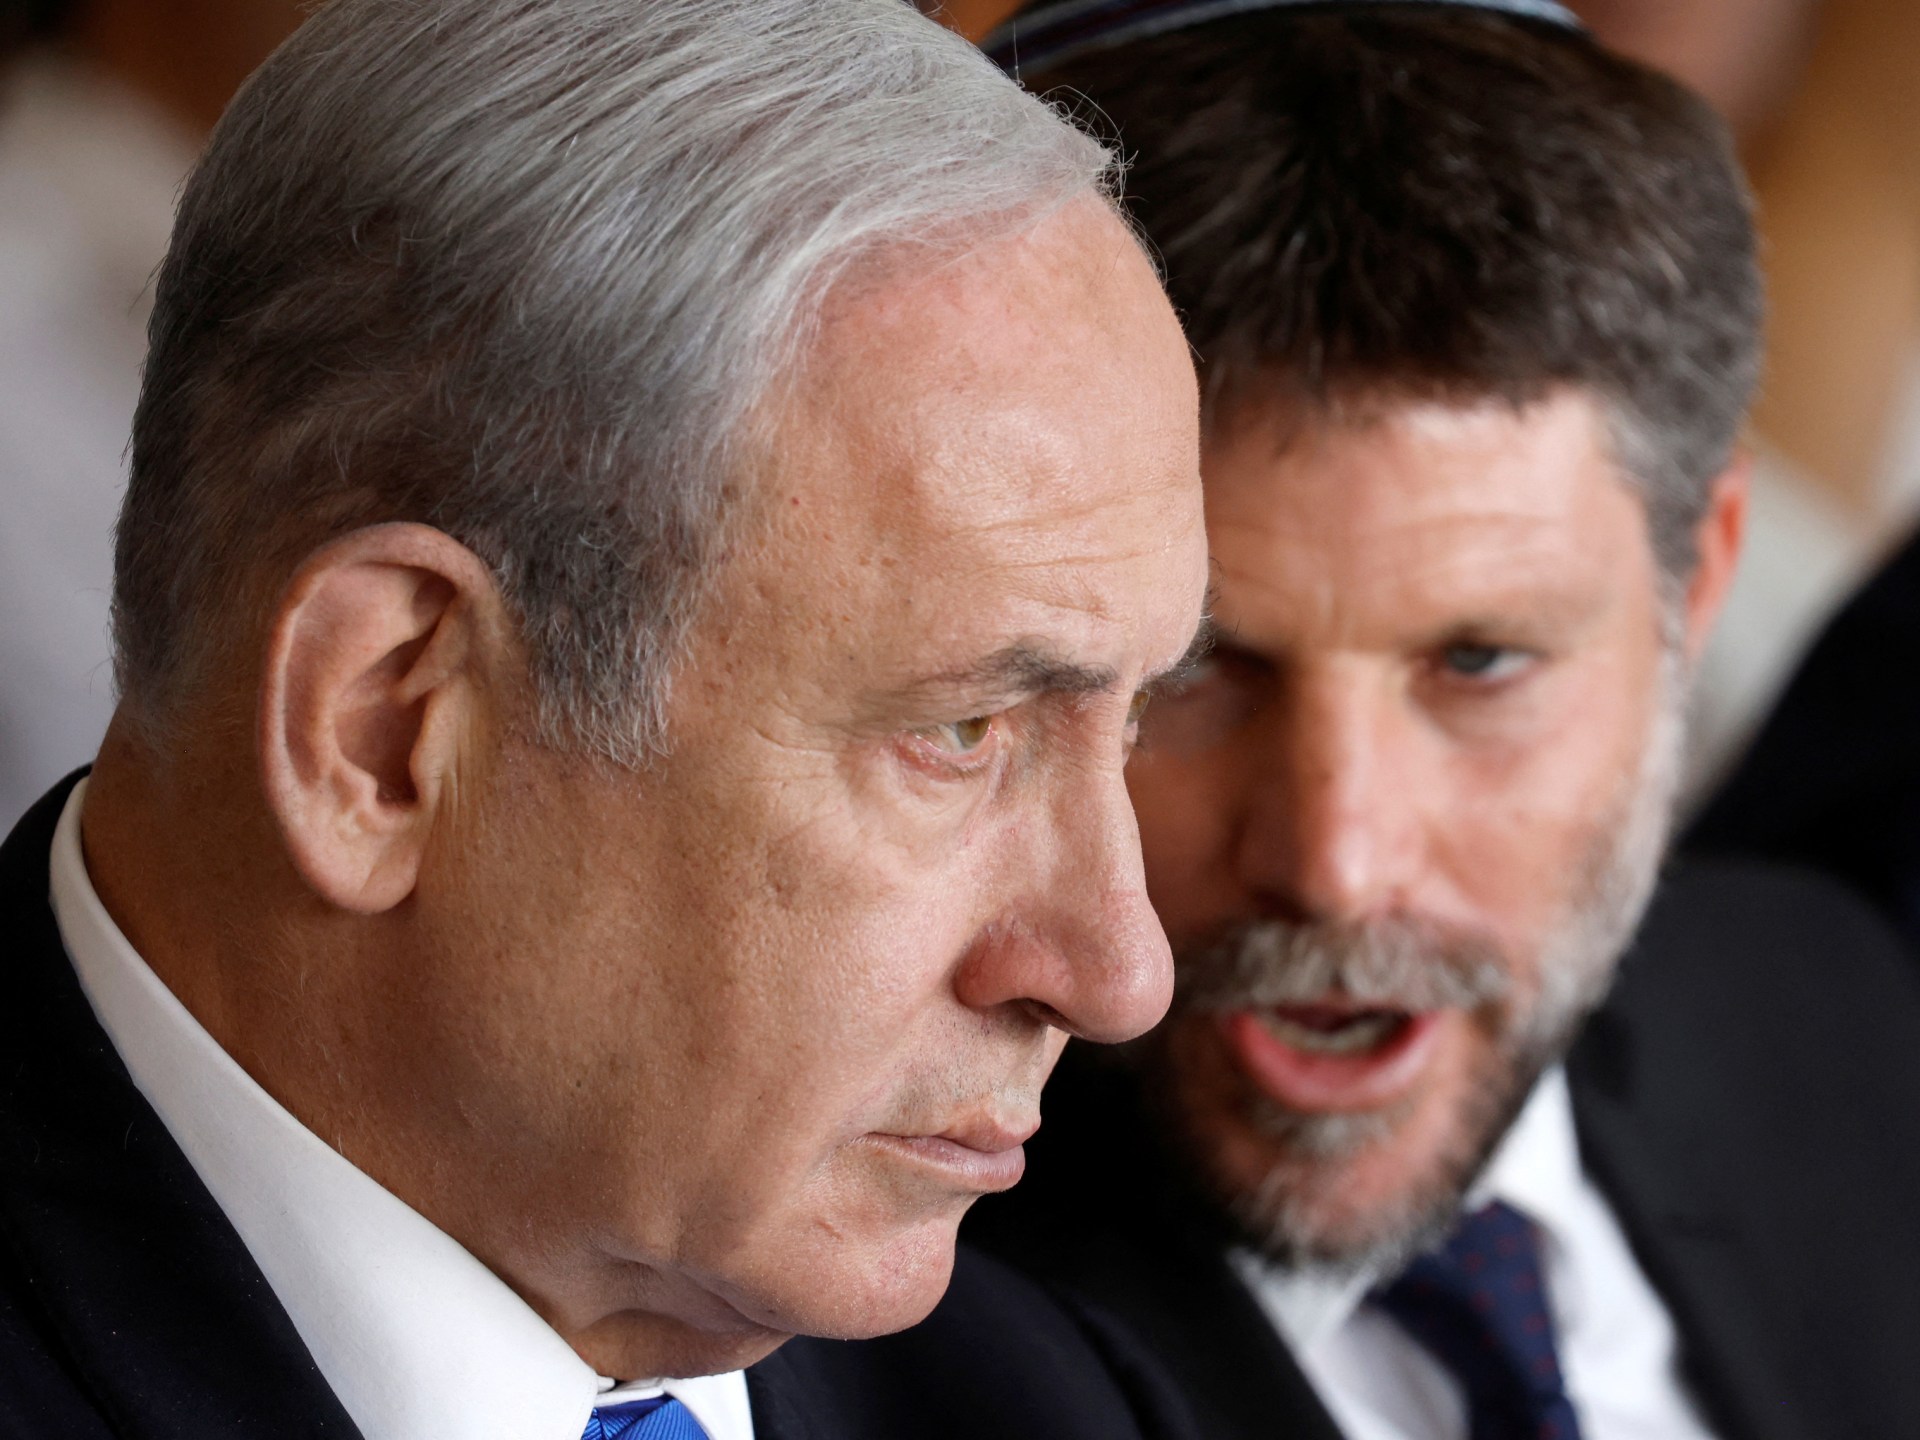 وزير إسرائيلي يدعو لإيجاد دول مستعدة لاستقبال سكان غزة | أخبار – البوكس نيوز